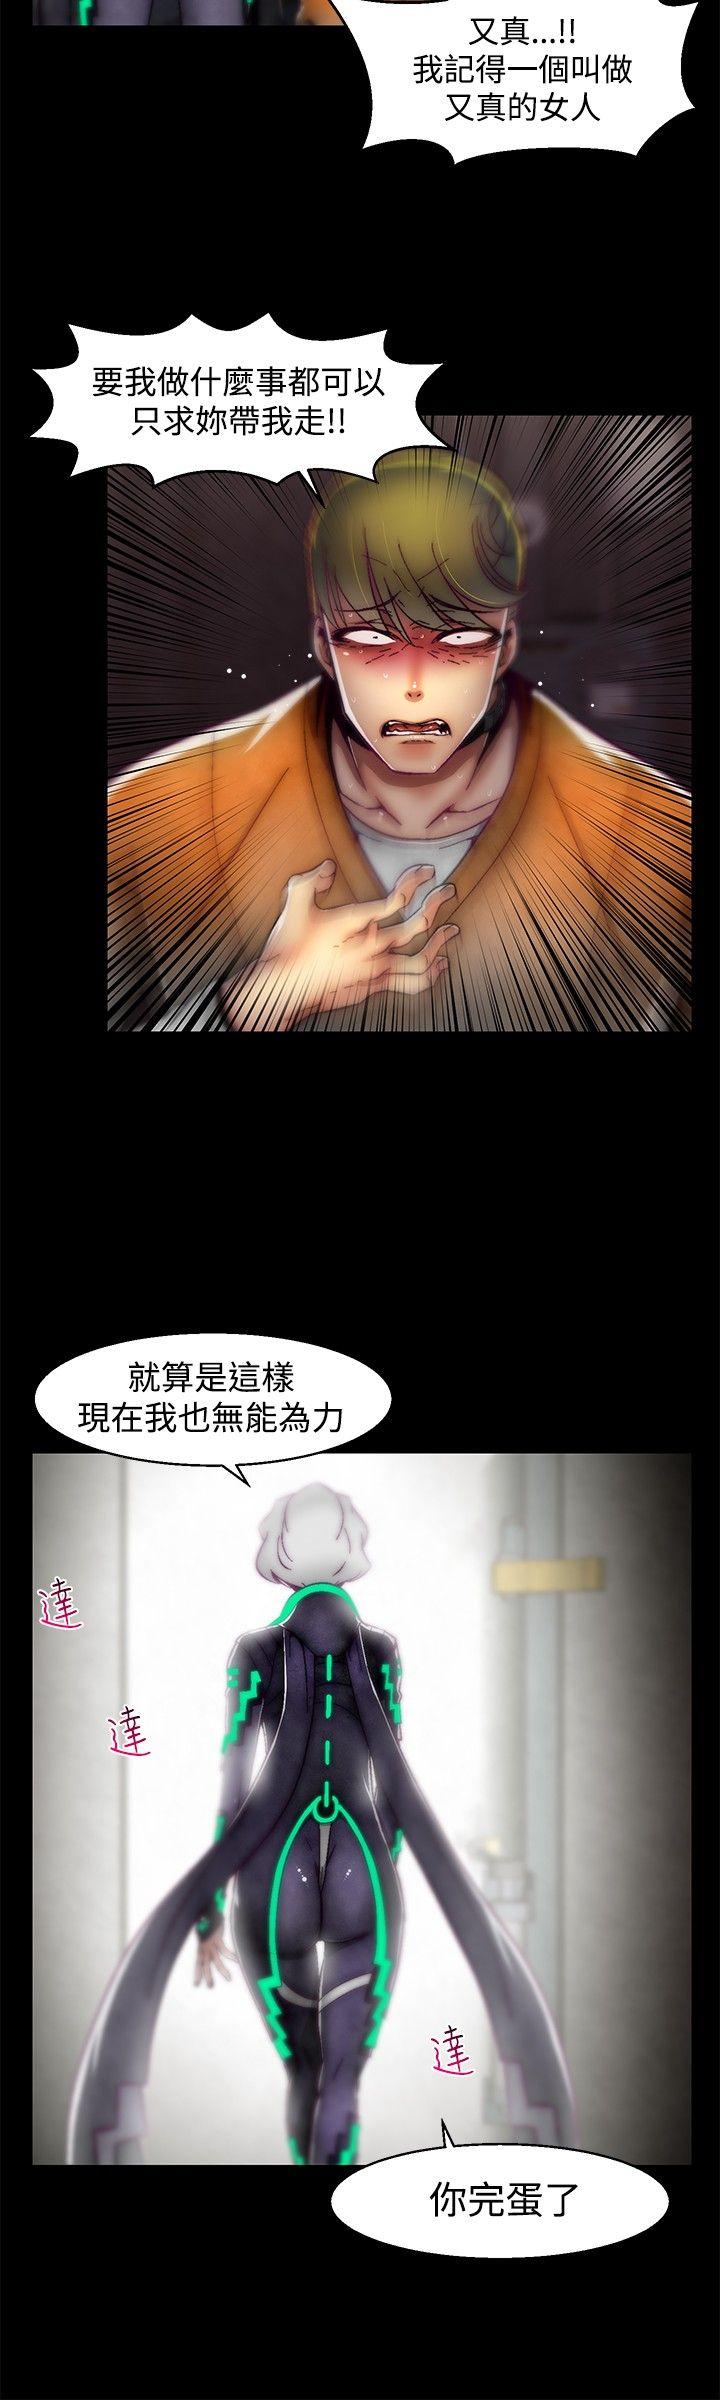 韩国污漫画 啪啪啪調教所 第1季最终话 20